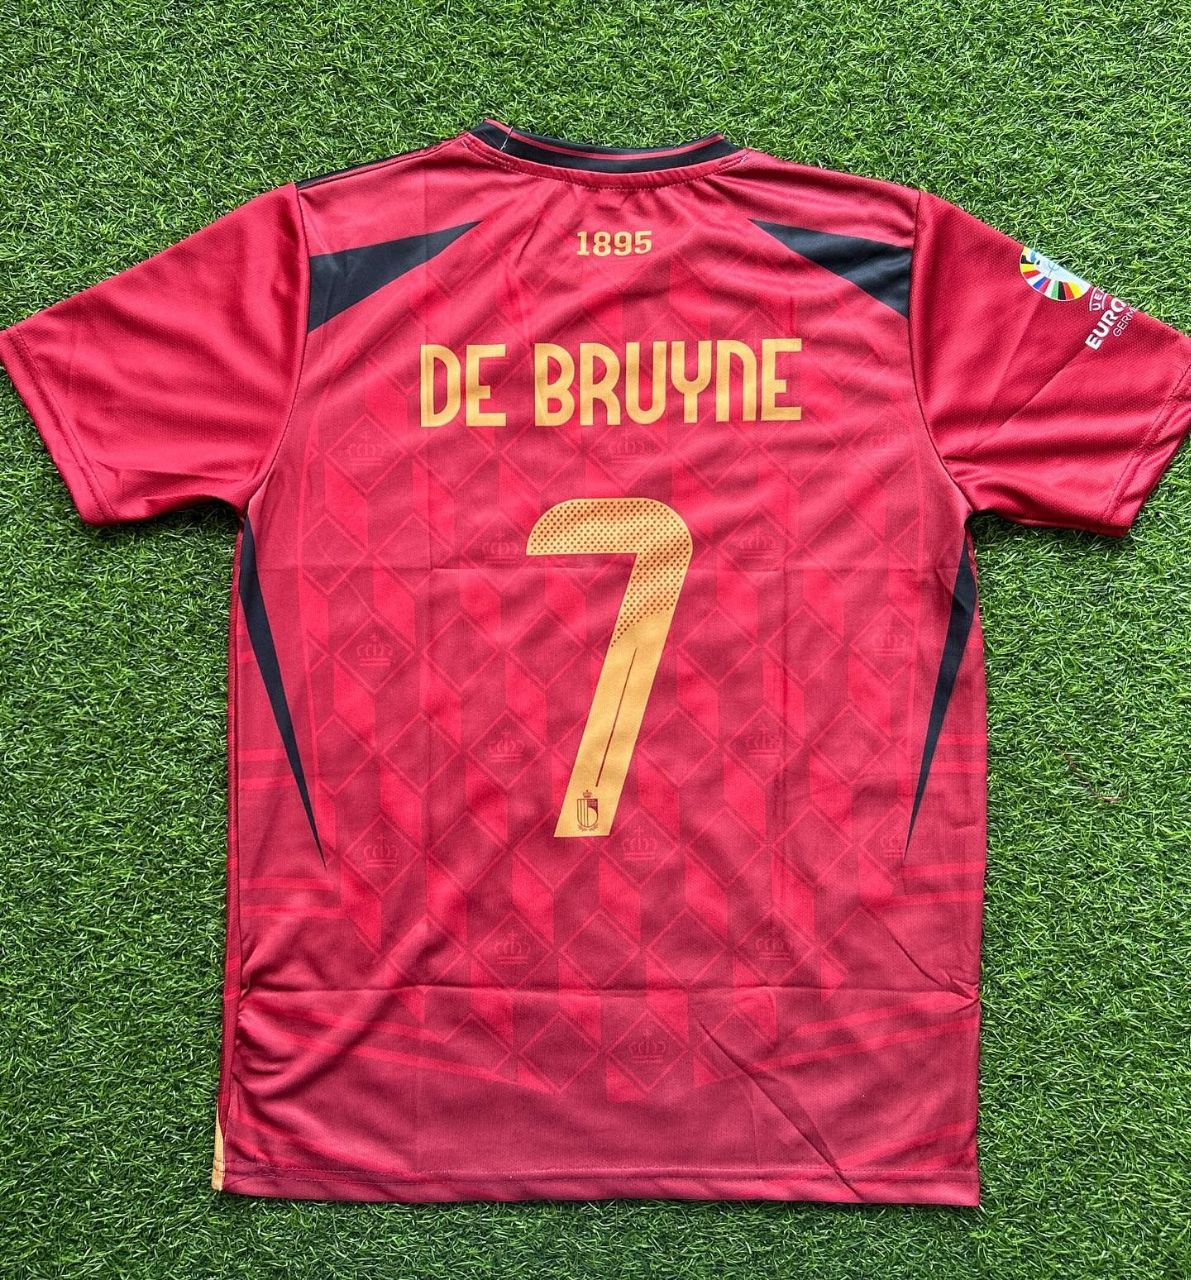 EM 2024: Kevin De Bruyne – Rotes Belgien-Trikot